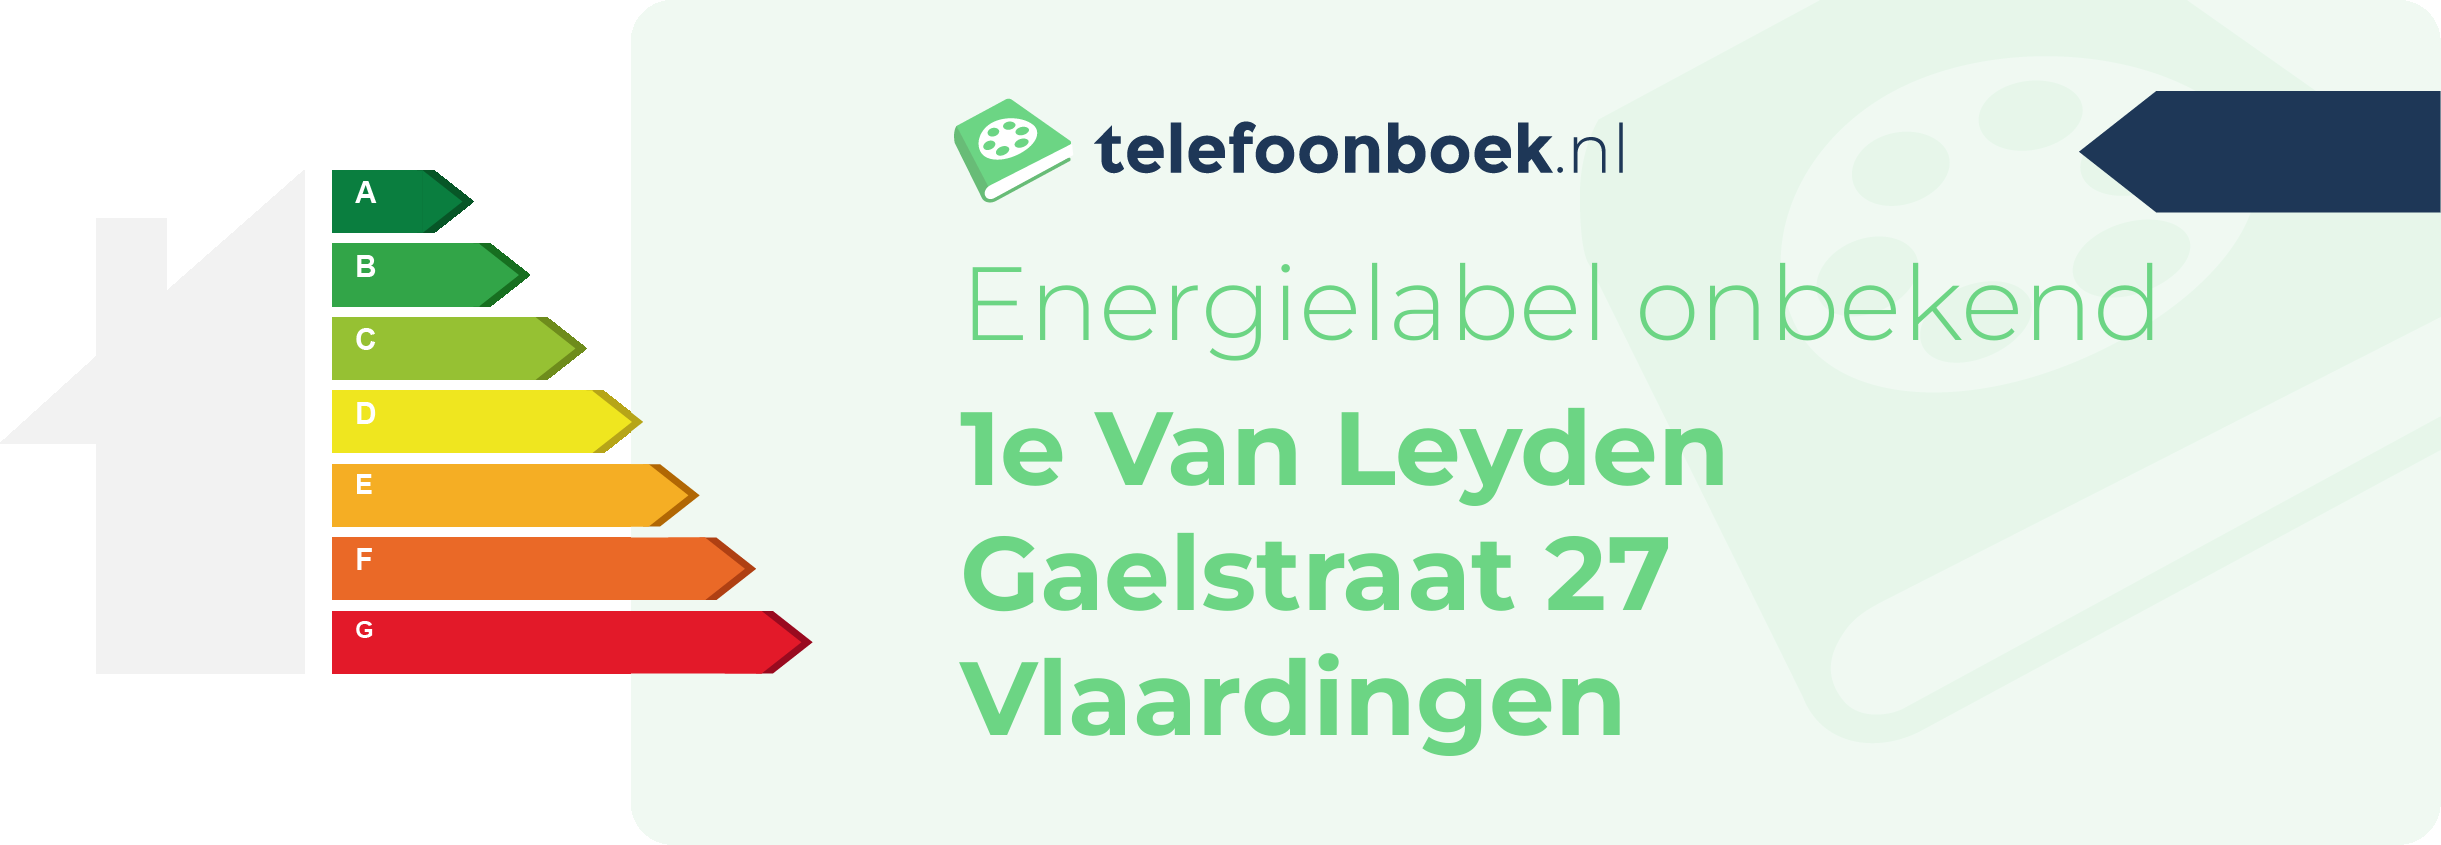 Energielabel 1e Van Leyden Gaelstraat 27 Vlaardingen